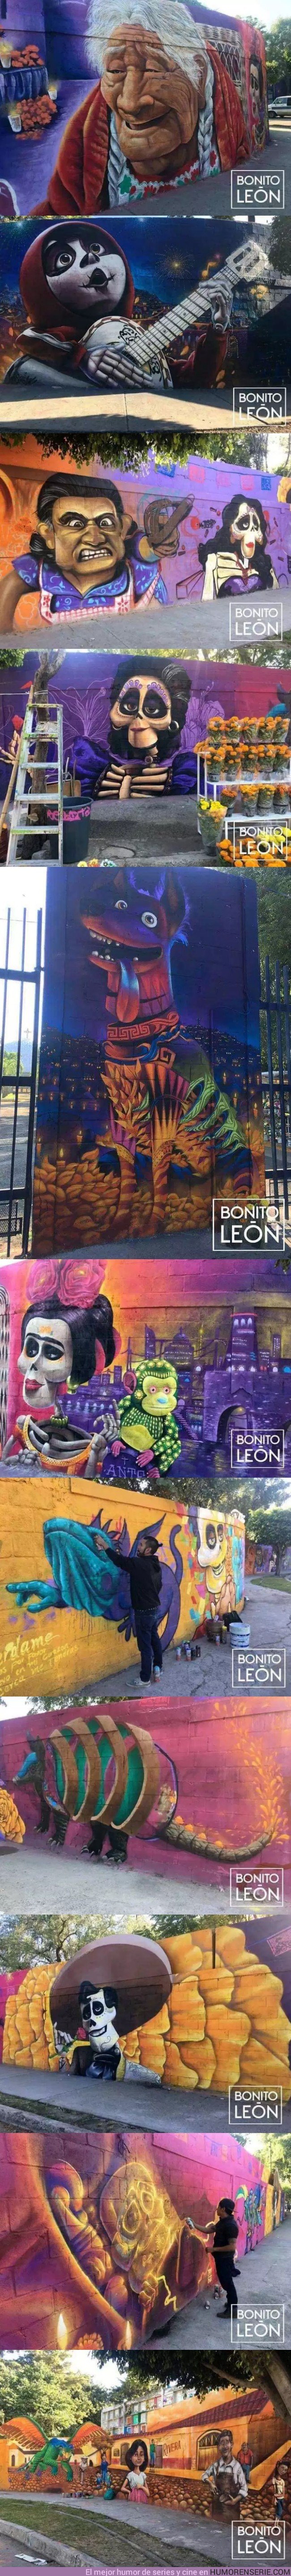 30620 - Grafitis en el panteón de Guanajuato con escenas de la película 'Coco', dejan a los mexicanos sin habla por su belleza